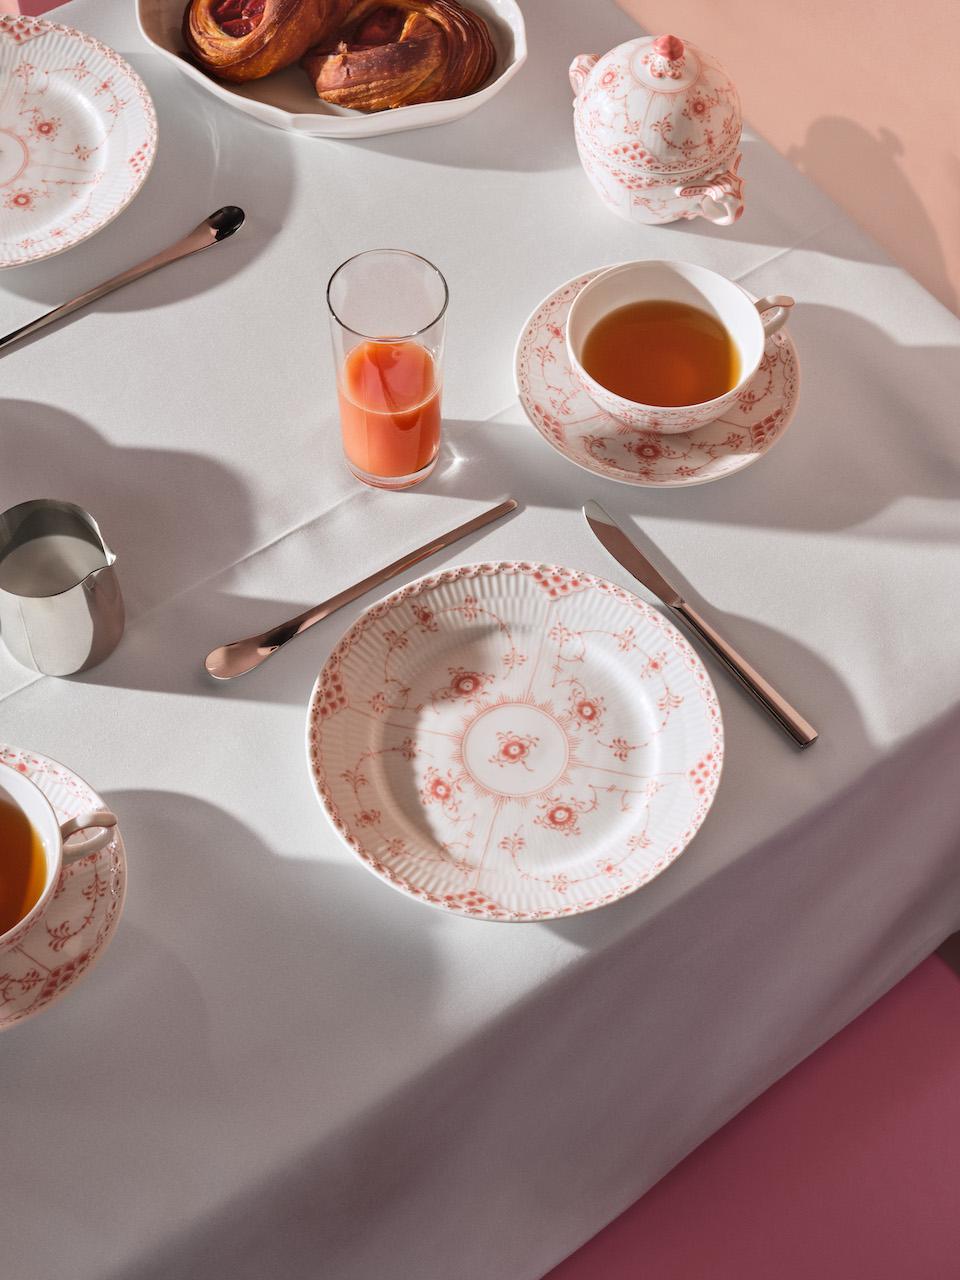 丹麥百年瓷器餐具品牌，以珊瑚色為餐桌帶來愉悅氣氛